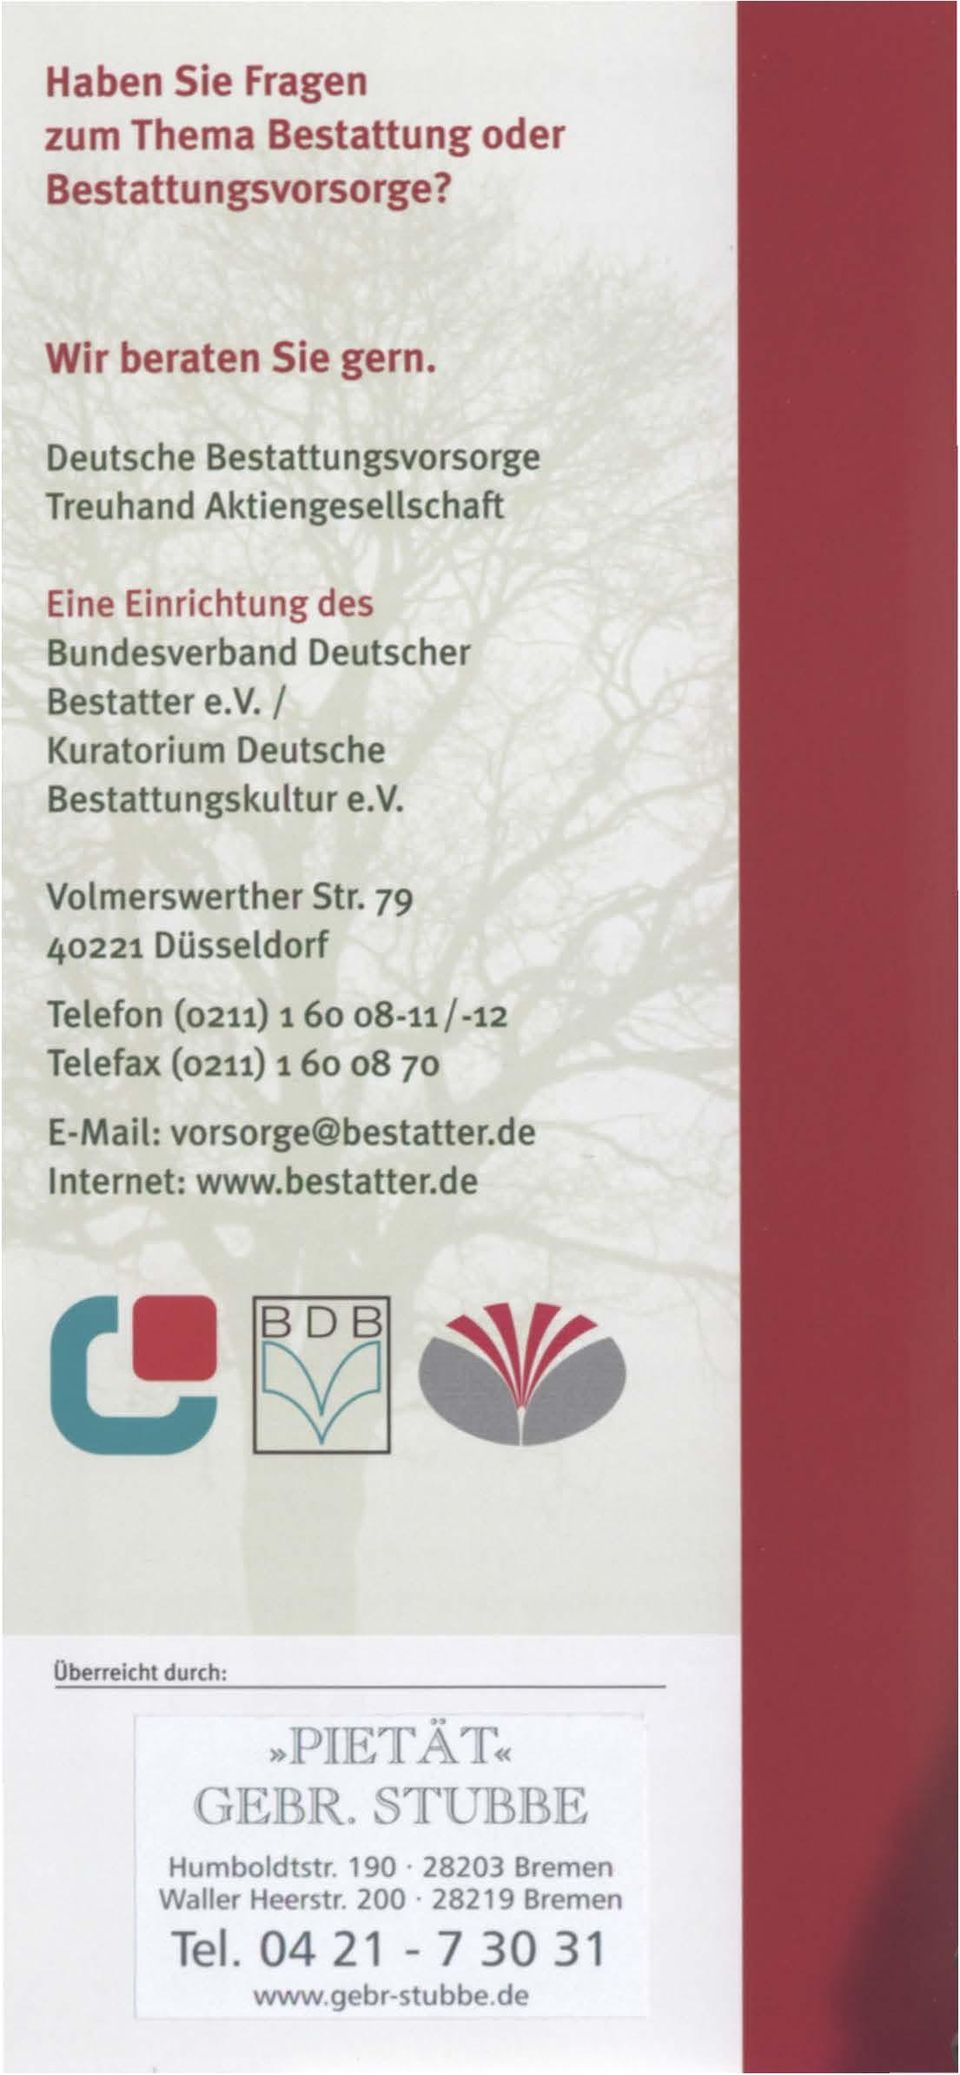 v. Volmerswerther Str. 79 40221 Düsseldorf Telefon (0211) 1 6o o8-11 I -12 Telefax (0211) 1 6o o8 70 E-Mail: vorsorge@bestatter.